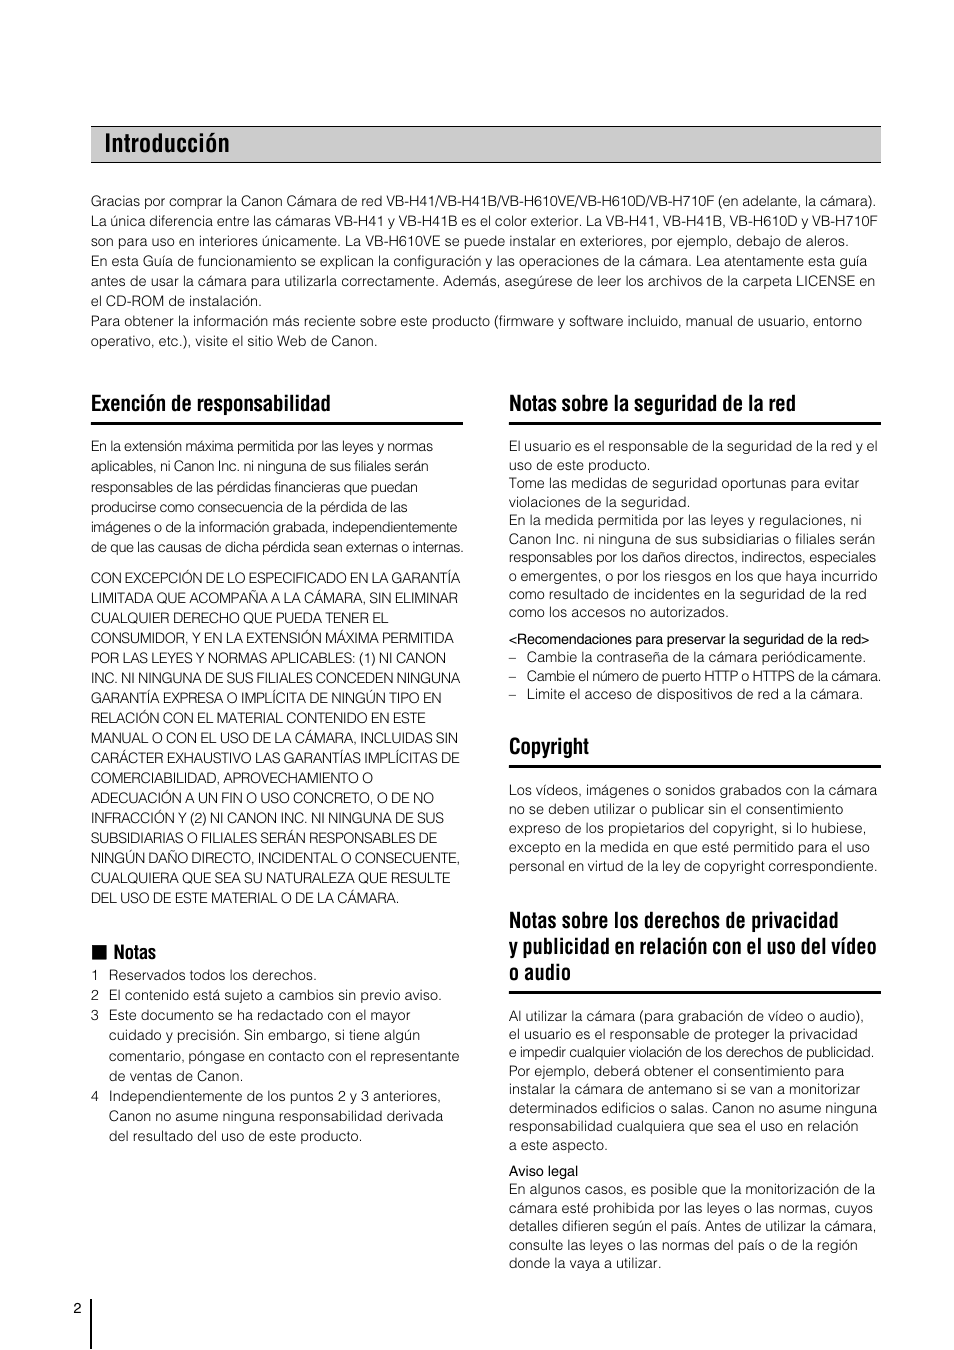 Introducción, Exención de responsabilidad, Notas sobre la seguridad de la red | Copyright, Notas | Canon VB-H41 Manual del usuario | Página 2 / 177